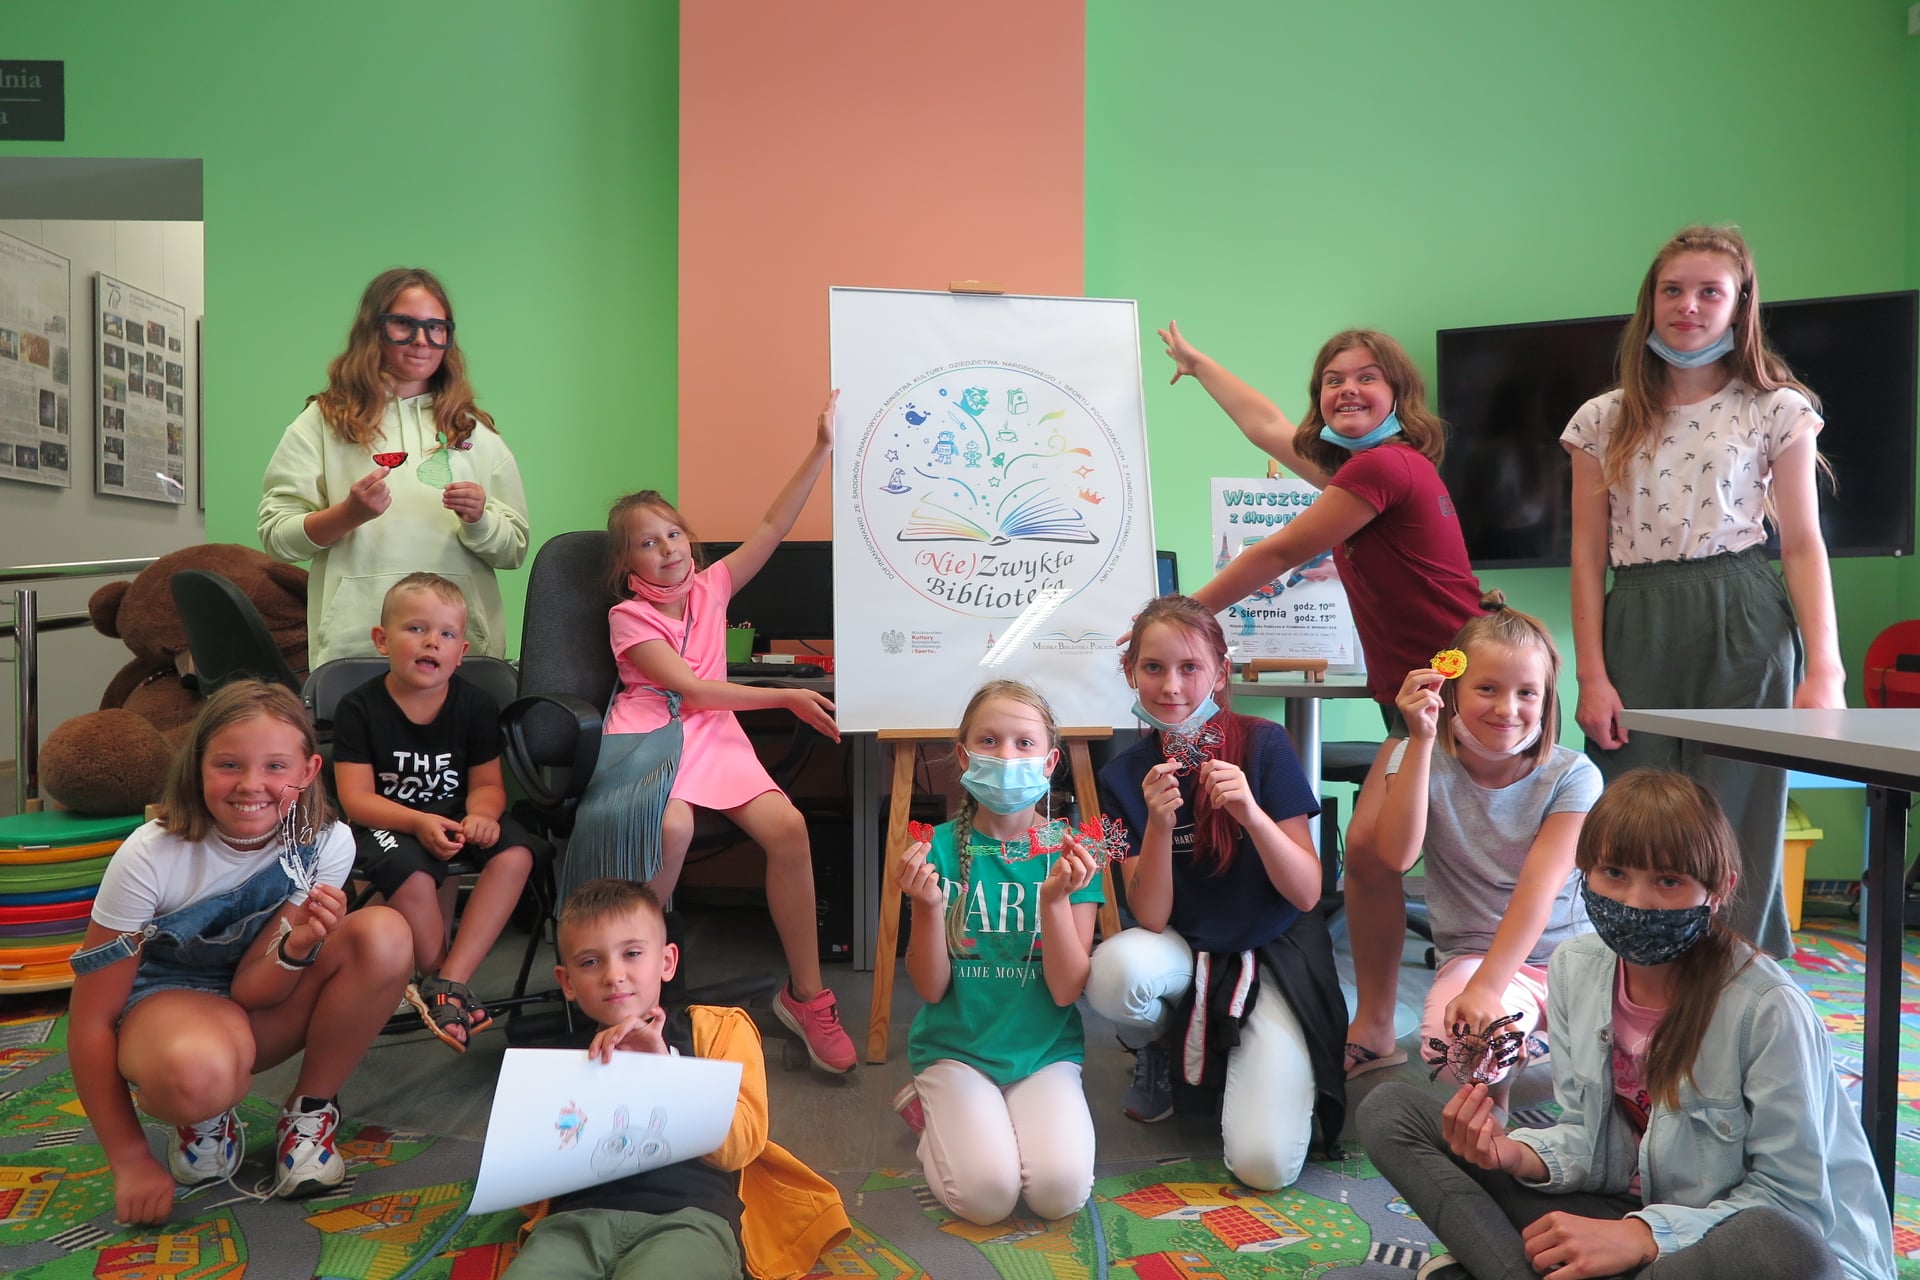 Na zdjęciu grupa dzieci : 9 dziewczynek i 2 chłopców, każde z nich trzyma w dłoni przedmiot wykonany za pomocą długopisu 3D. W tle plakat z logo projektu "(Nie)Zwykła biblioteka".